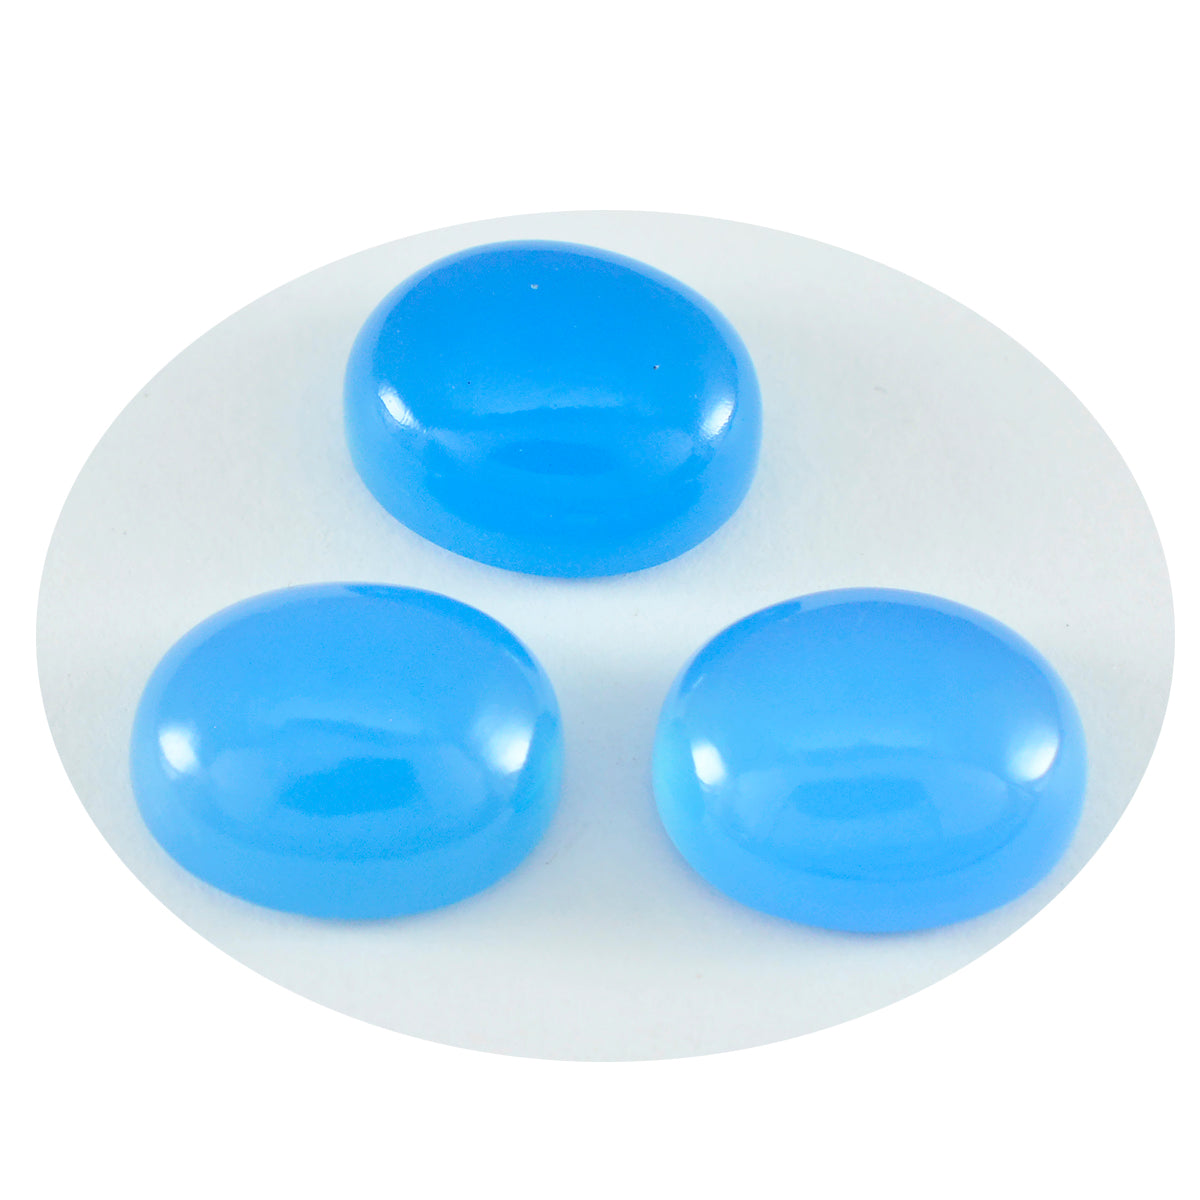 riyogems 1шт синий халцедон кабошон 7x9 мм овальная форма превосходное качество свободный камень